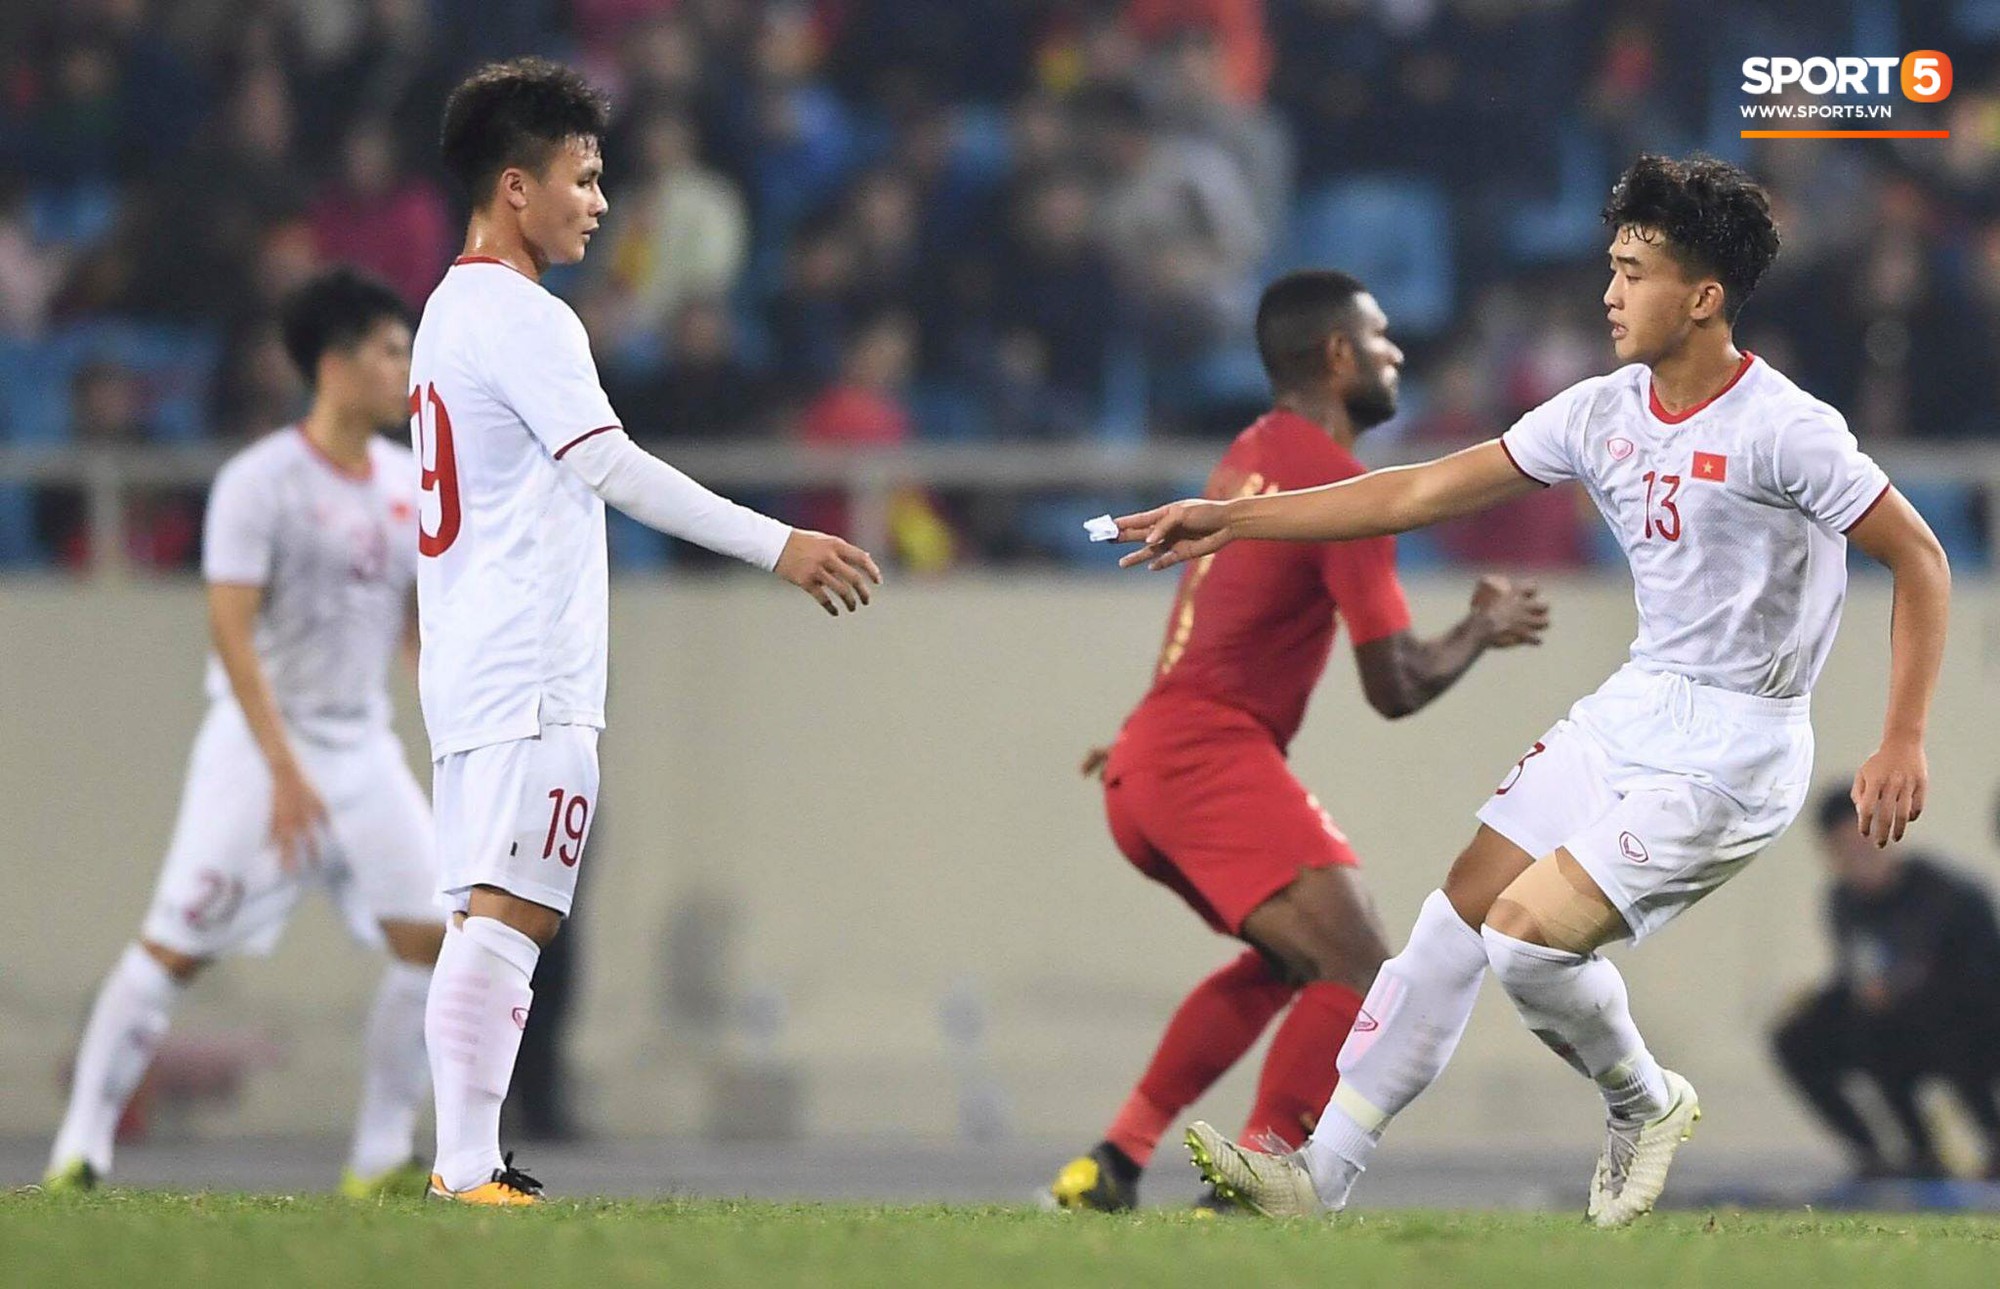 Lộ chiến thuật của U23 Việt Nam từ “mật thư” thầy Park gửi đội trưởng Quang Hải trong trận đấu với U23 Indonesia